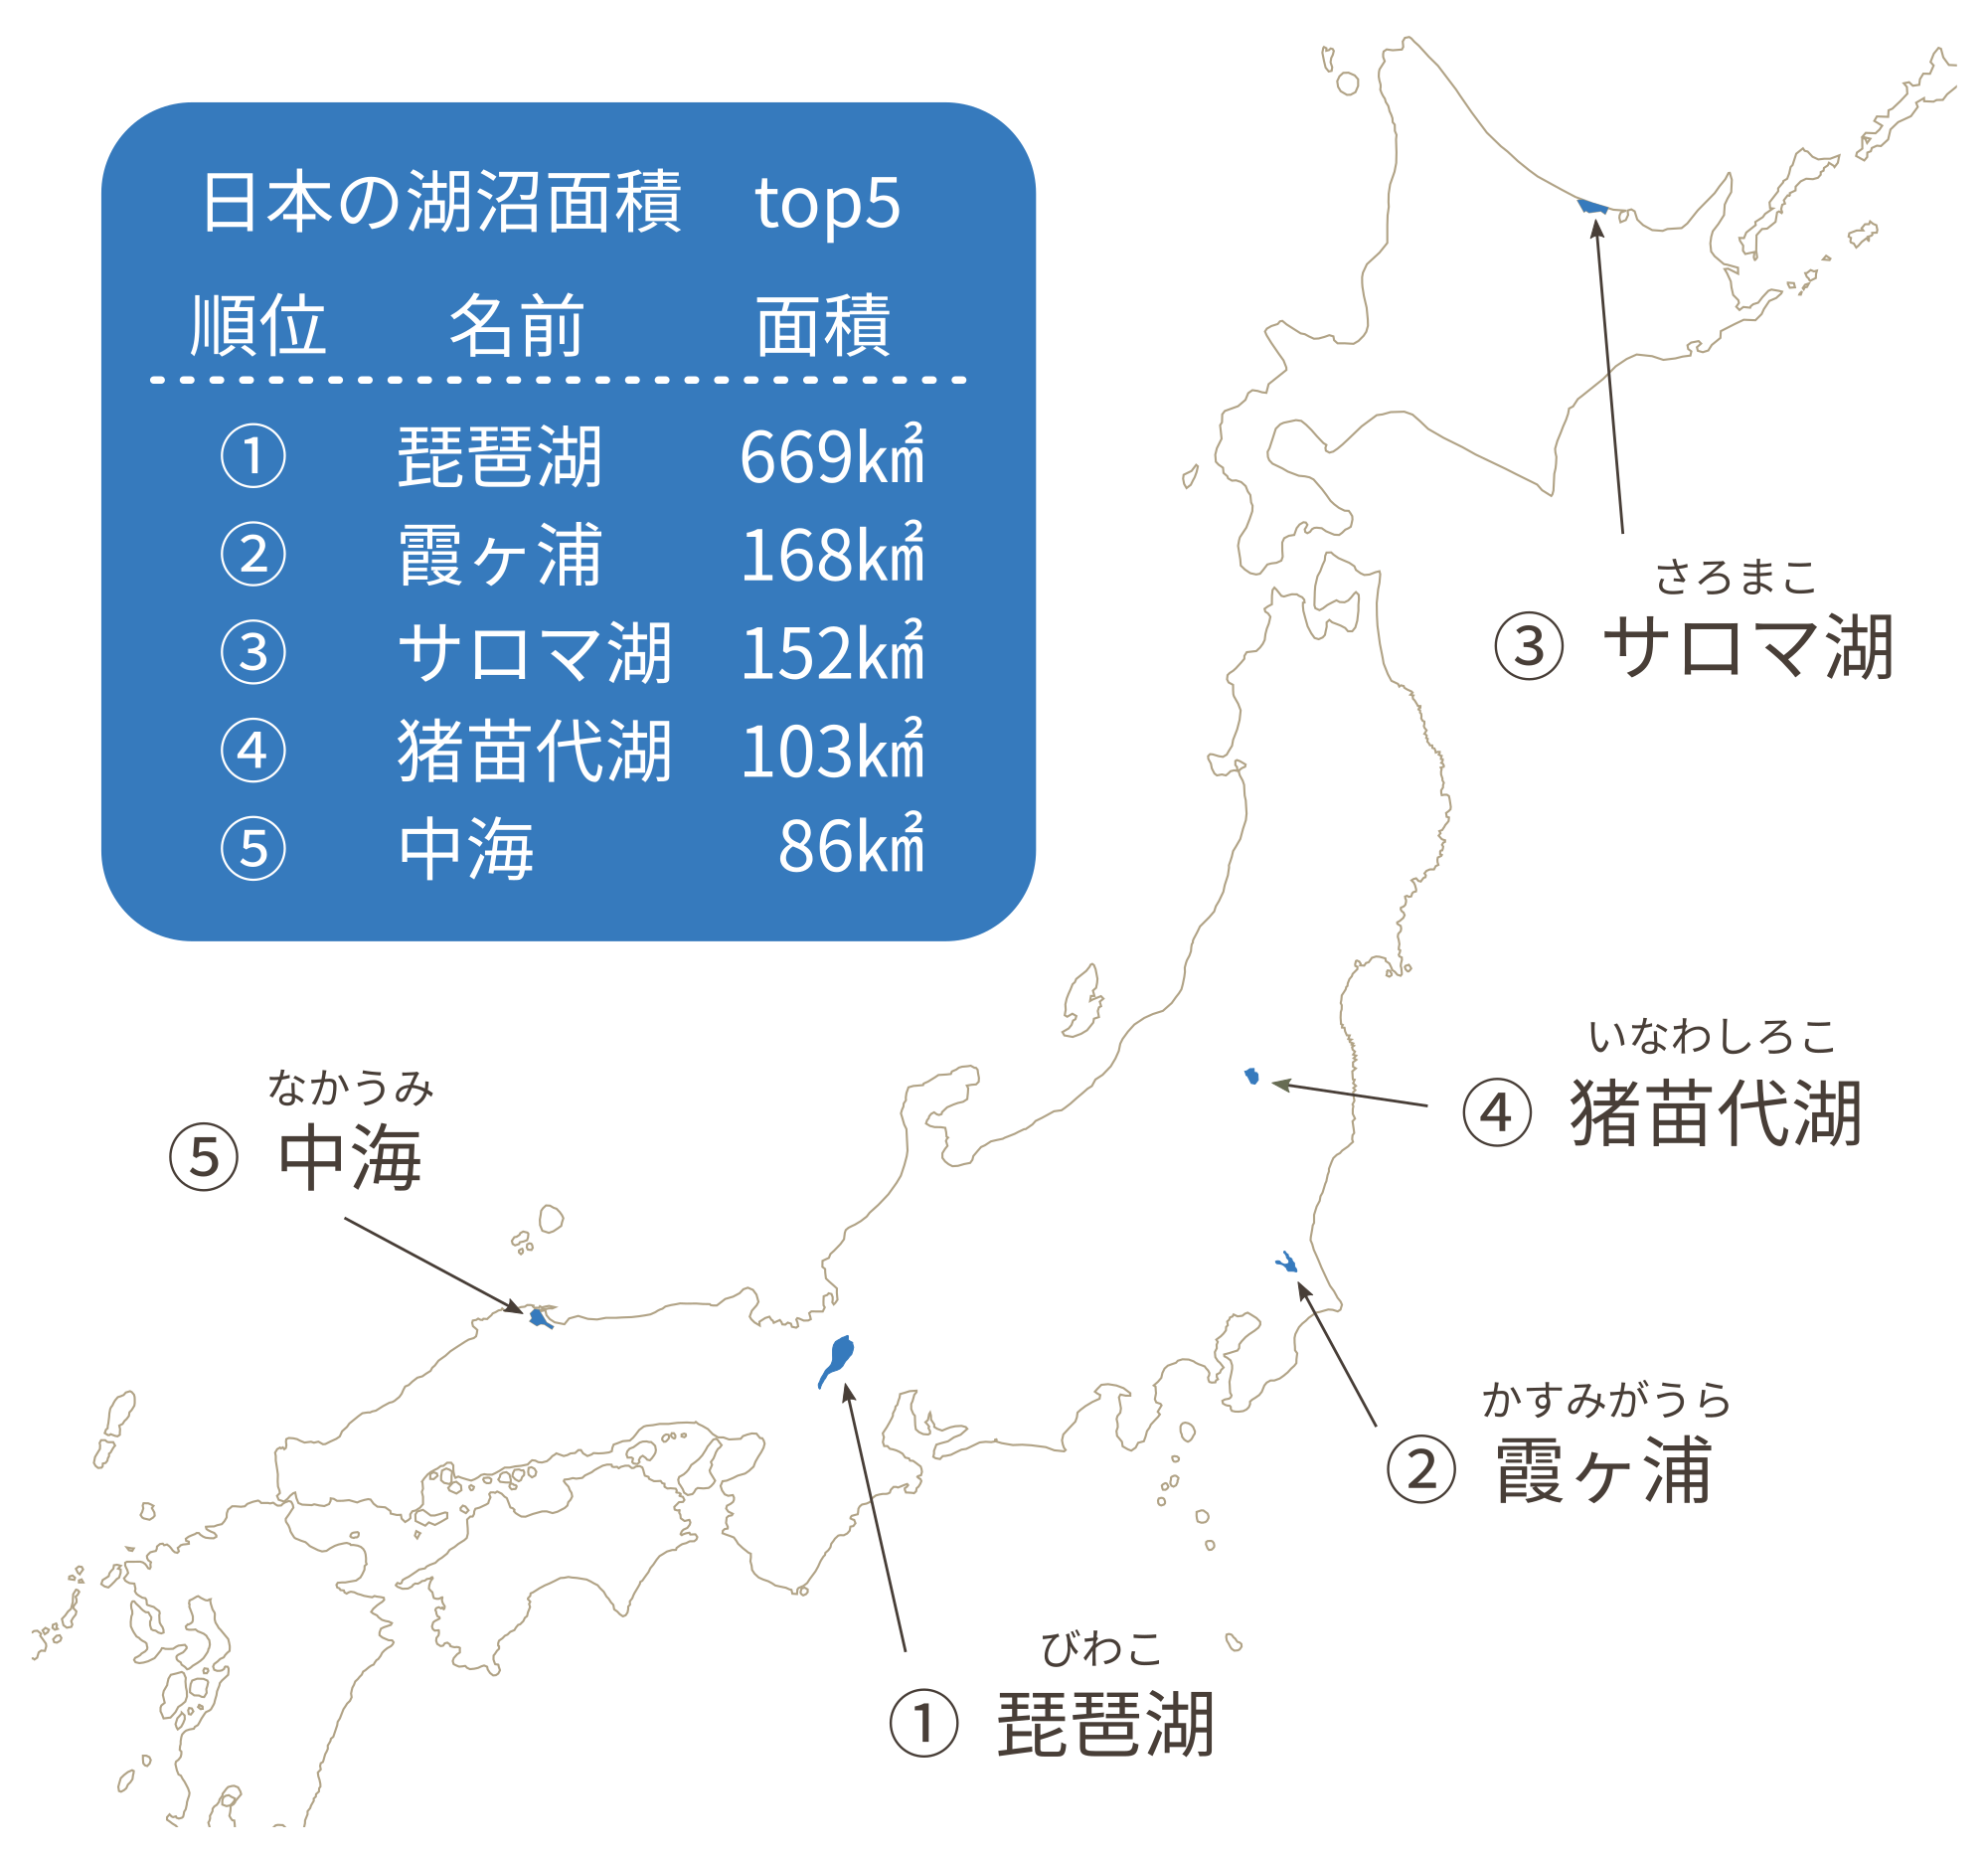 日本の湖沼（湖・沼・池）の名称、面積、所在都道府県の画像